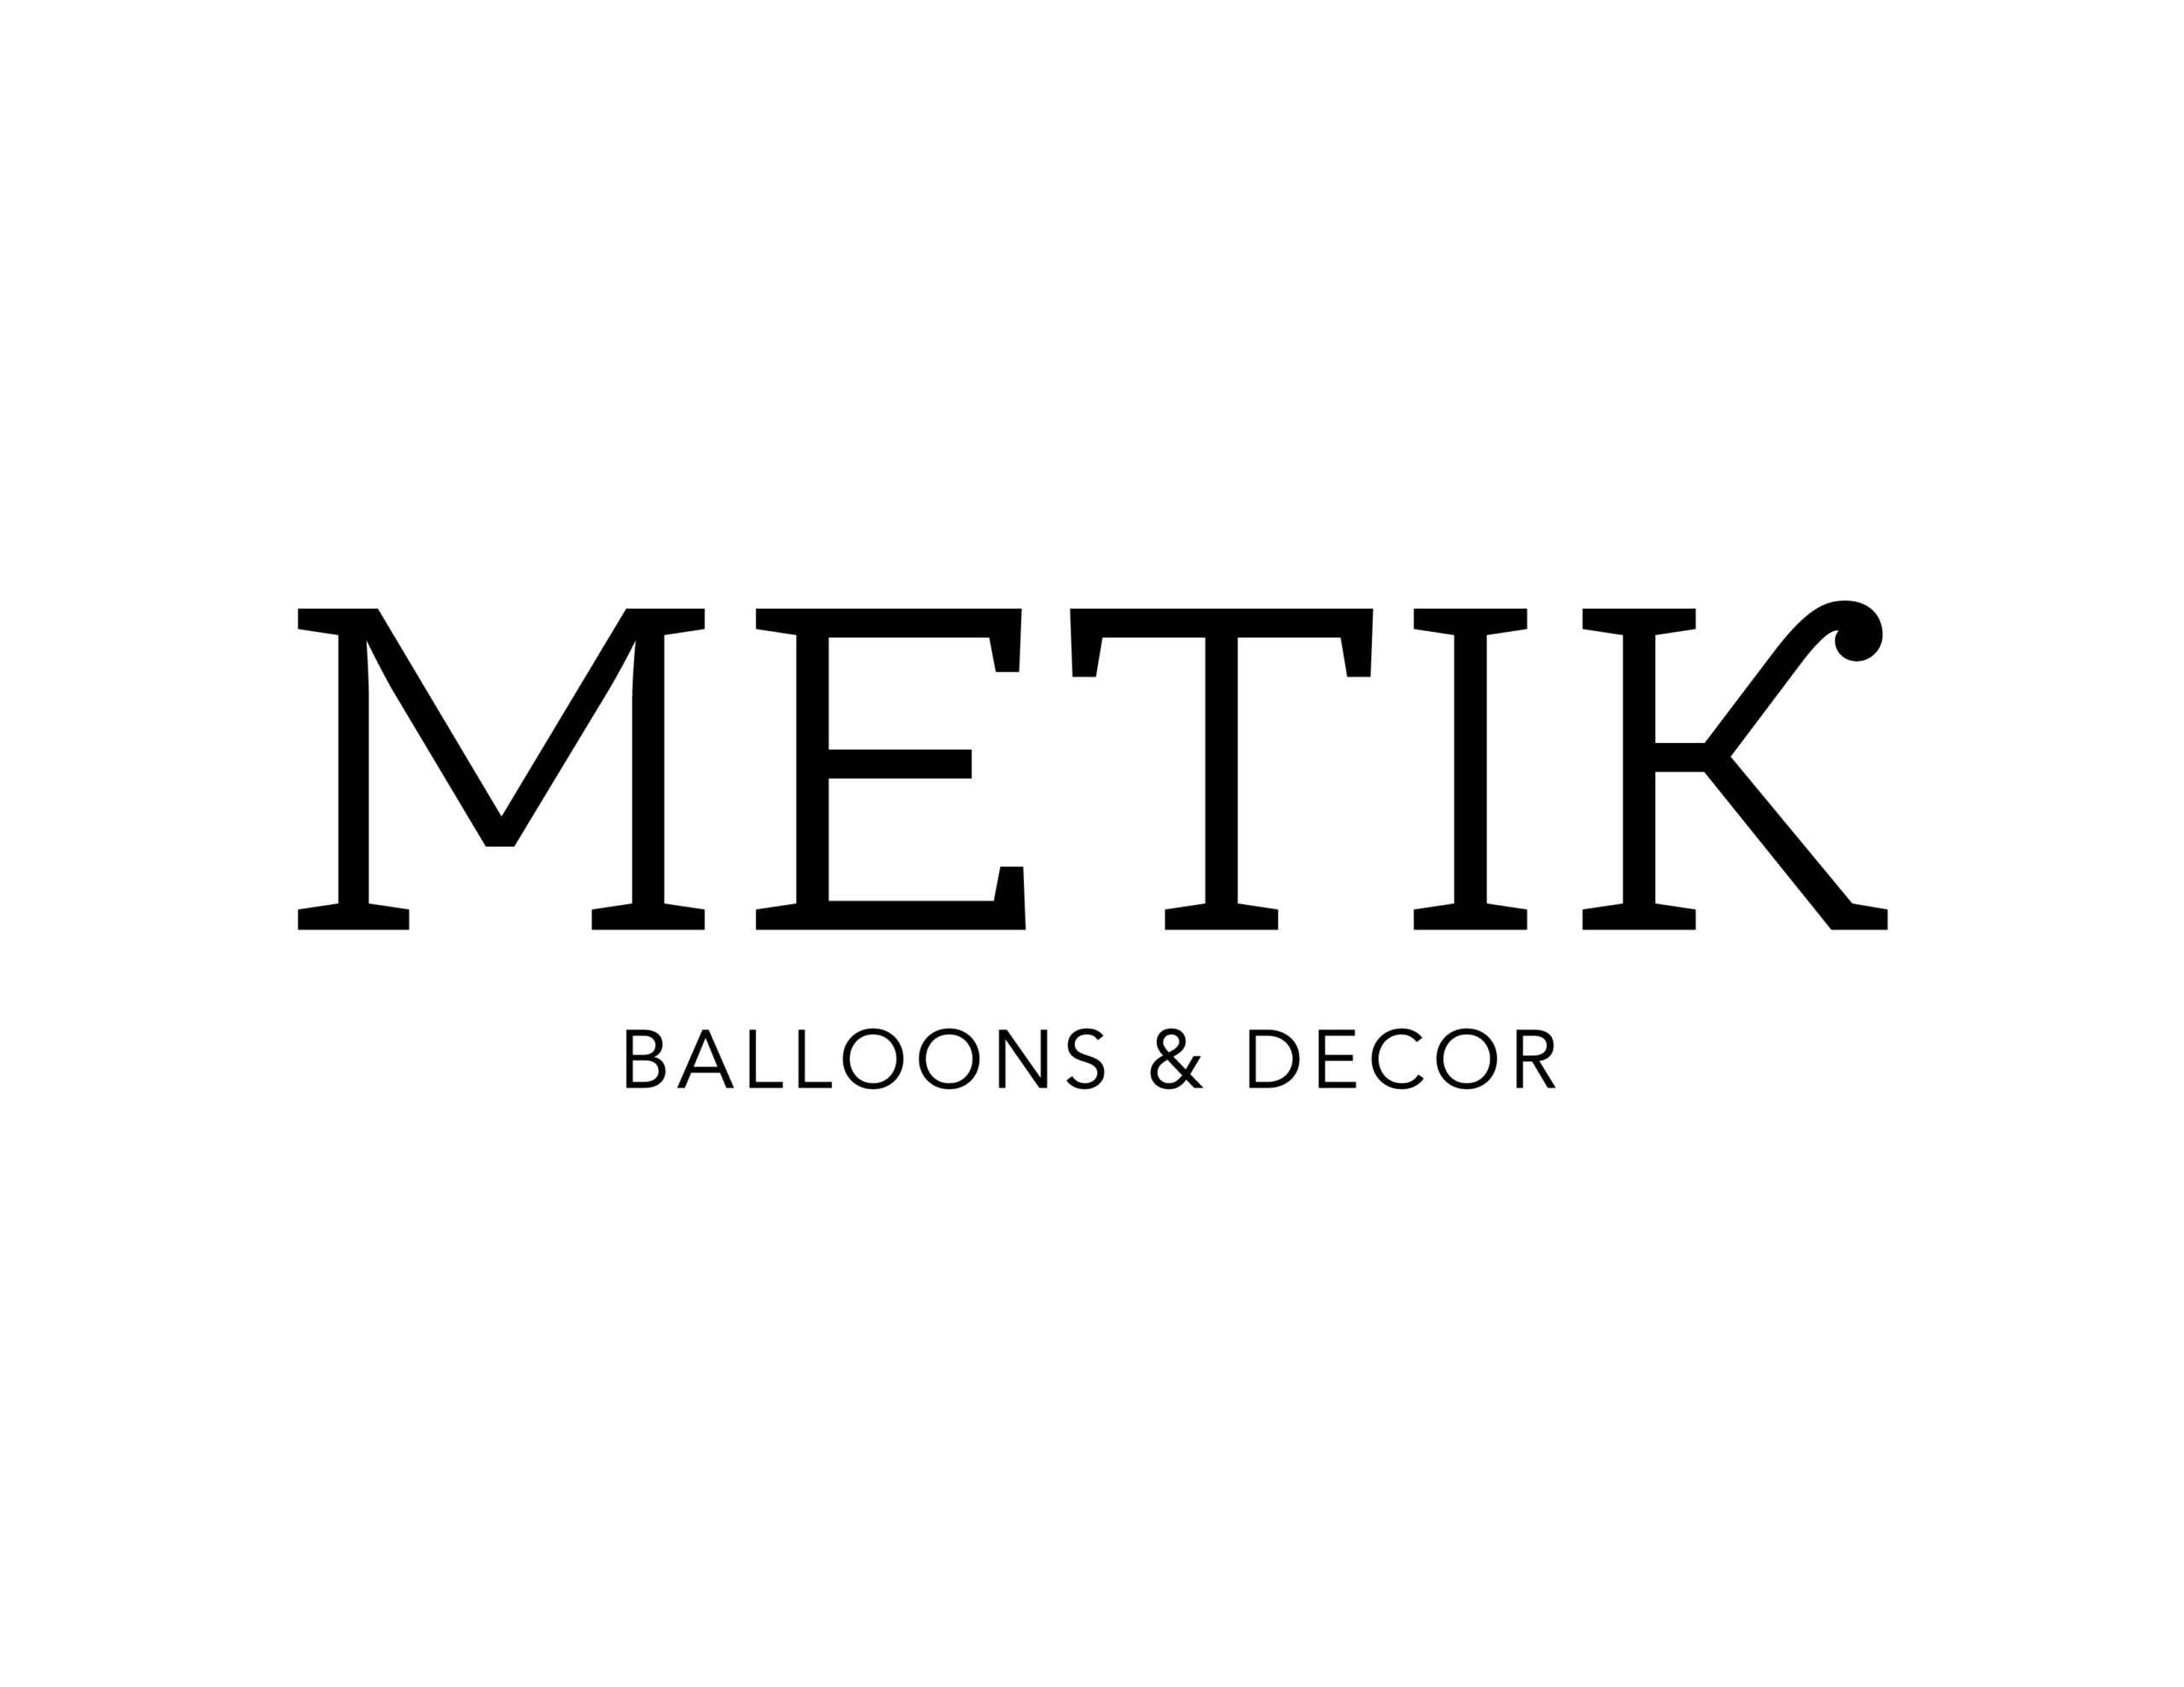 Metik-logo-black-01